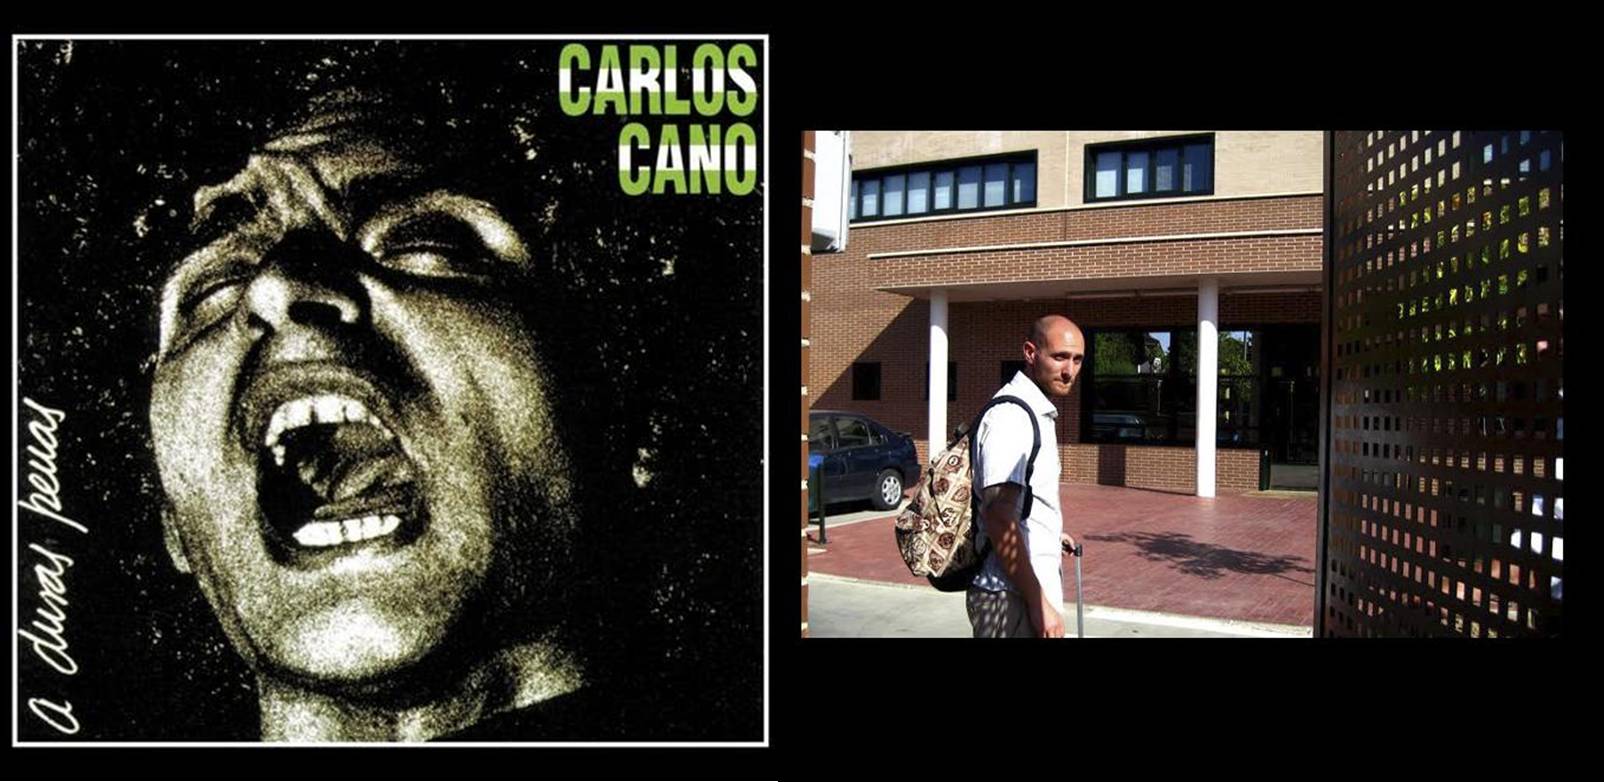 De Carlos Cano a Carlos Cano